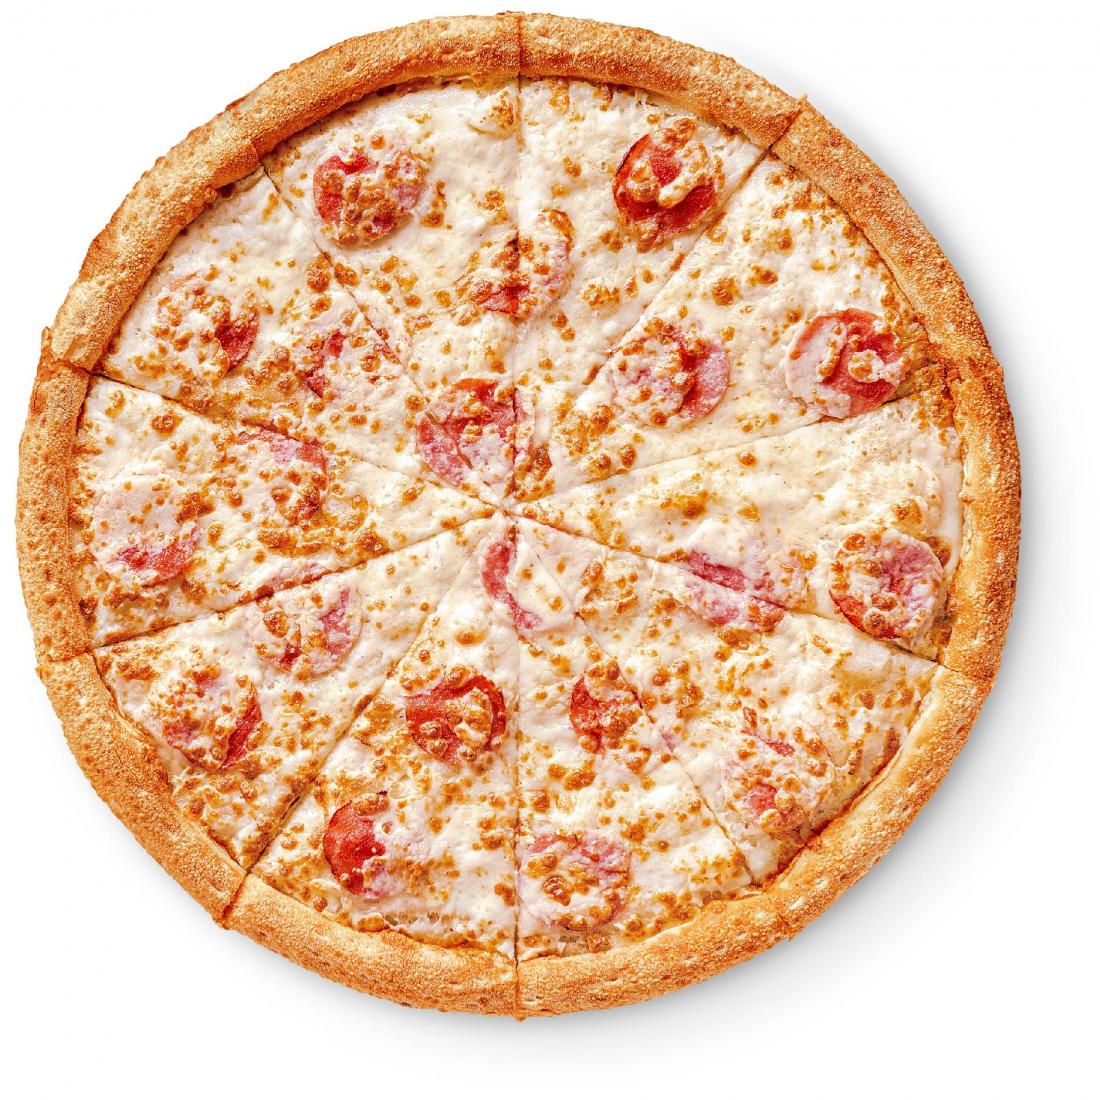 состав пиццы пепперони в додо фото 109